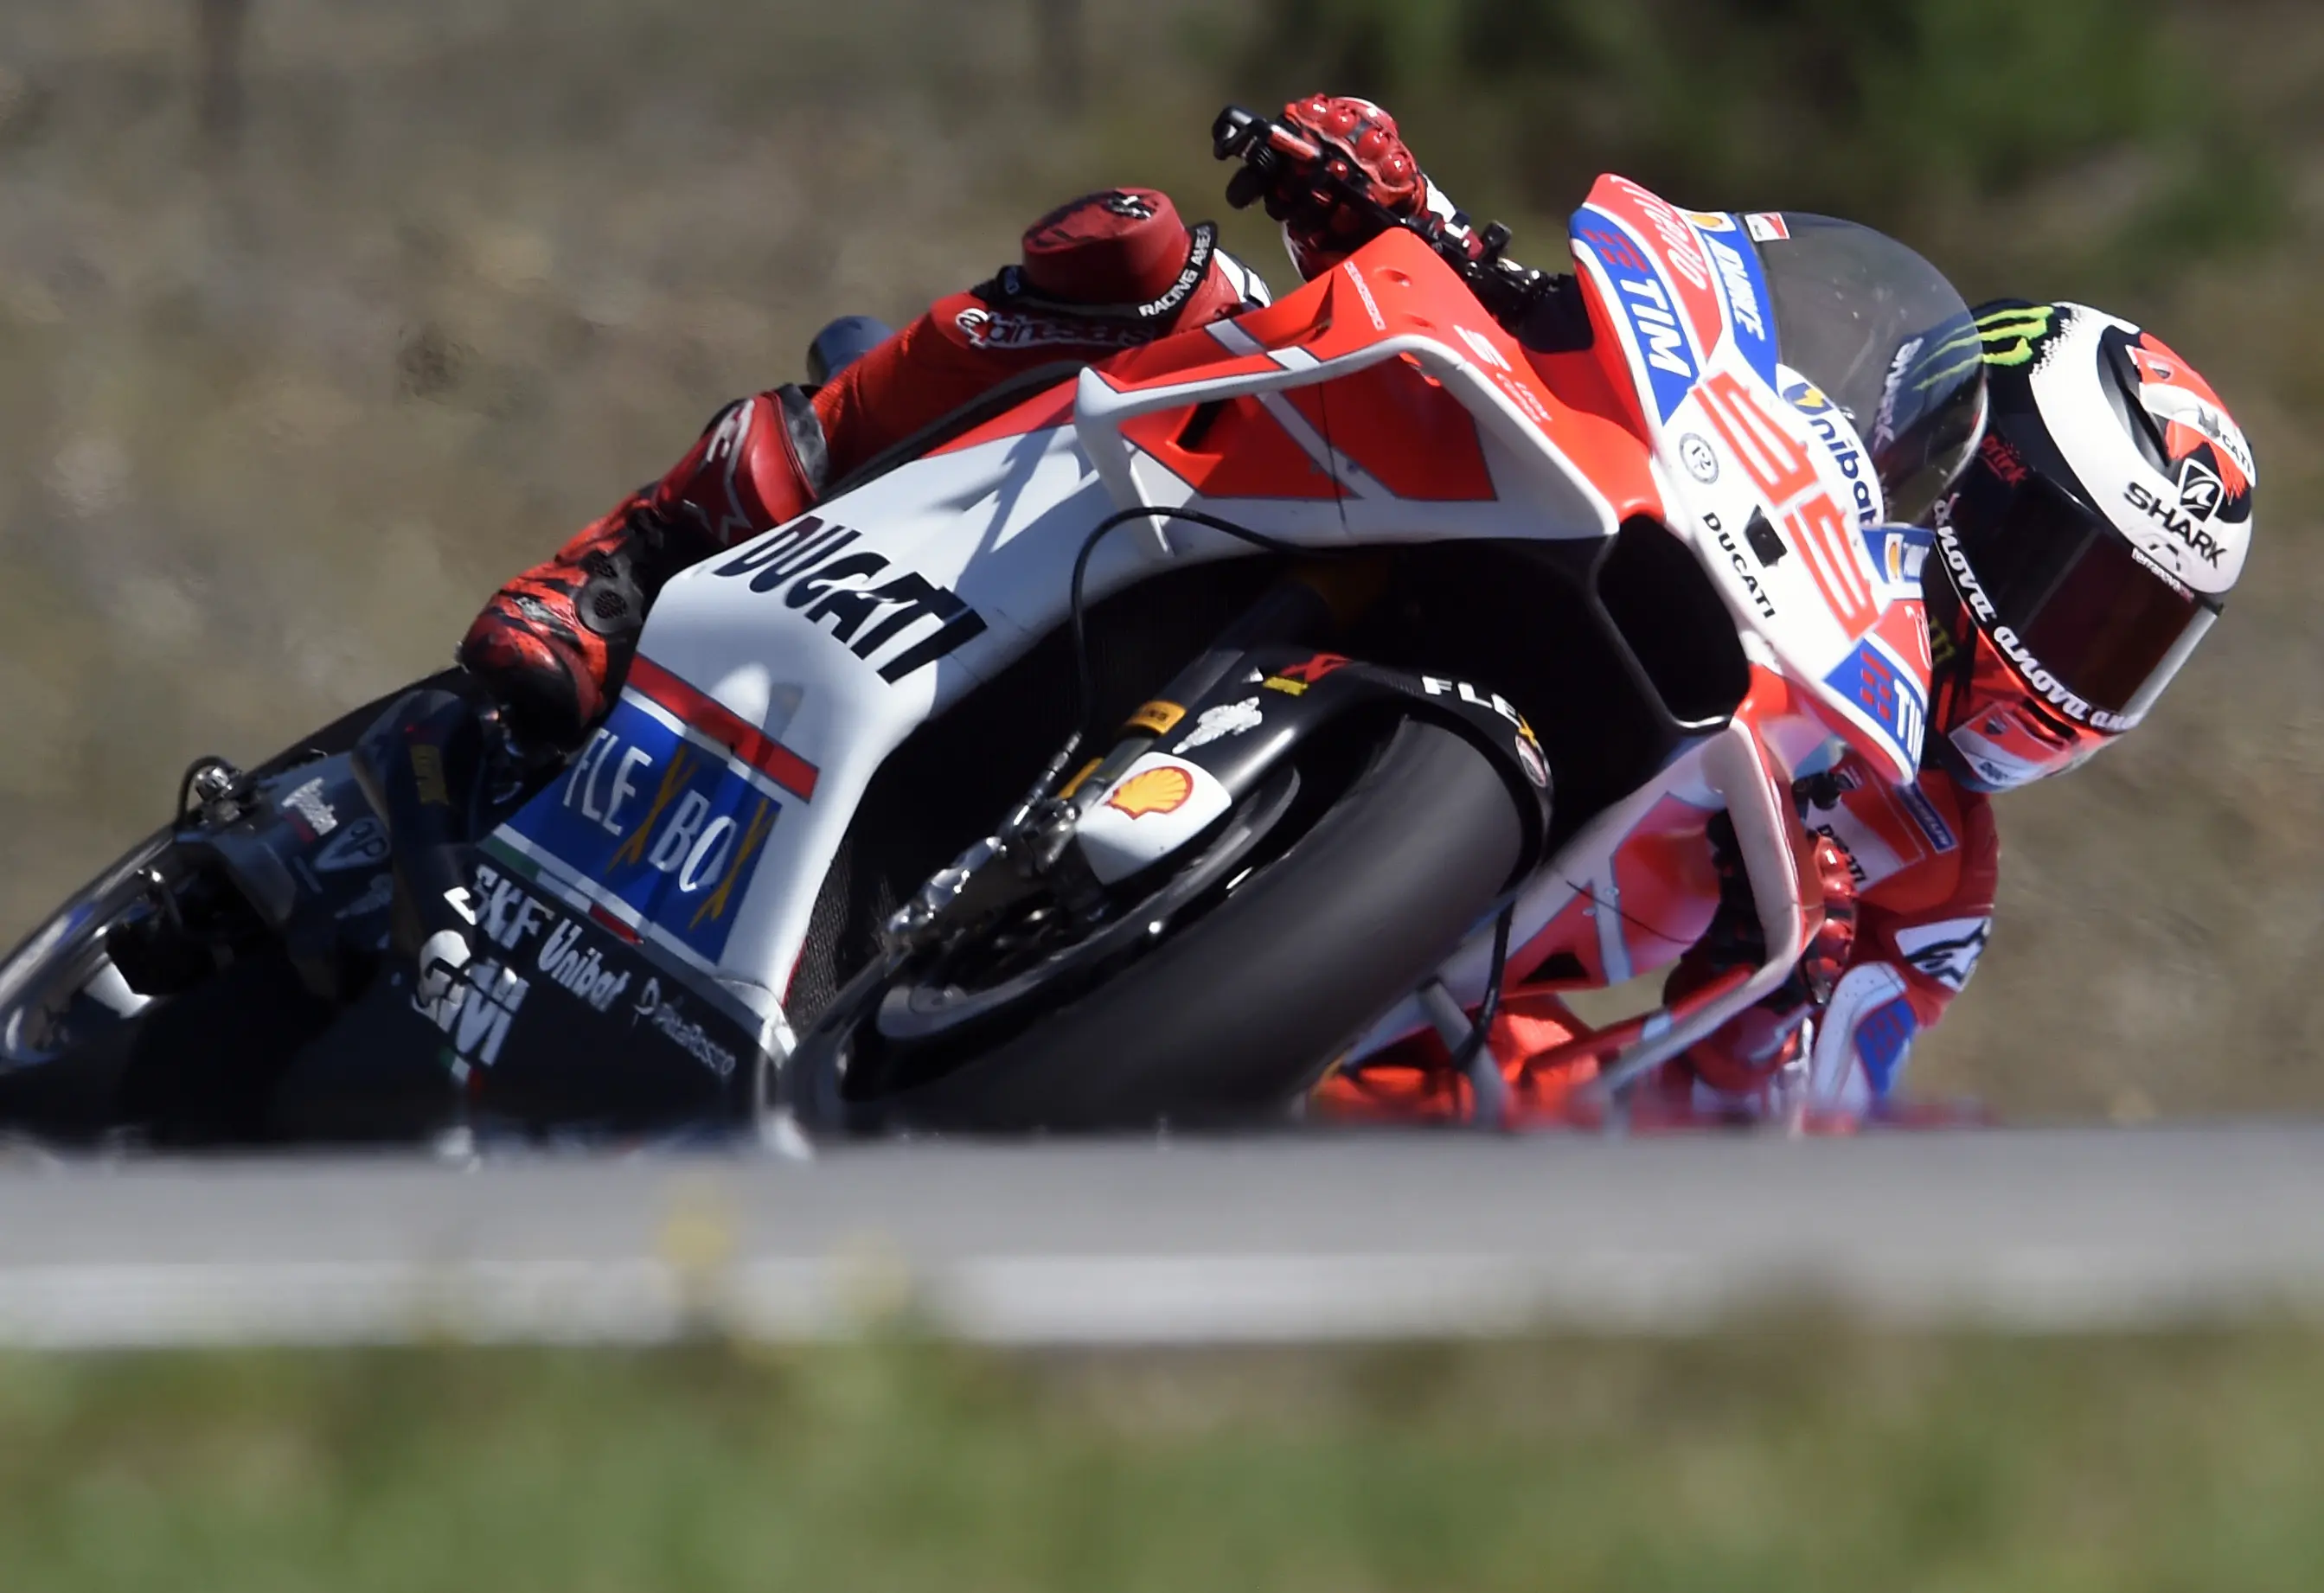 Pembalap Ducati, Jorge Lorenzo mengakhiri balapan MotoGP Republik Ceko 2017 di urutan ke-15. (Michal Cizek / AFP)